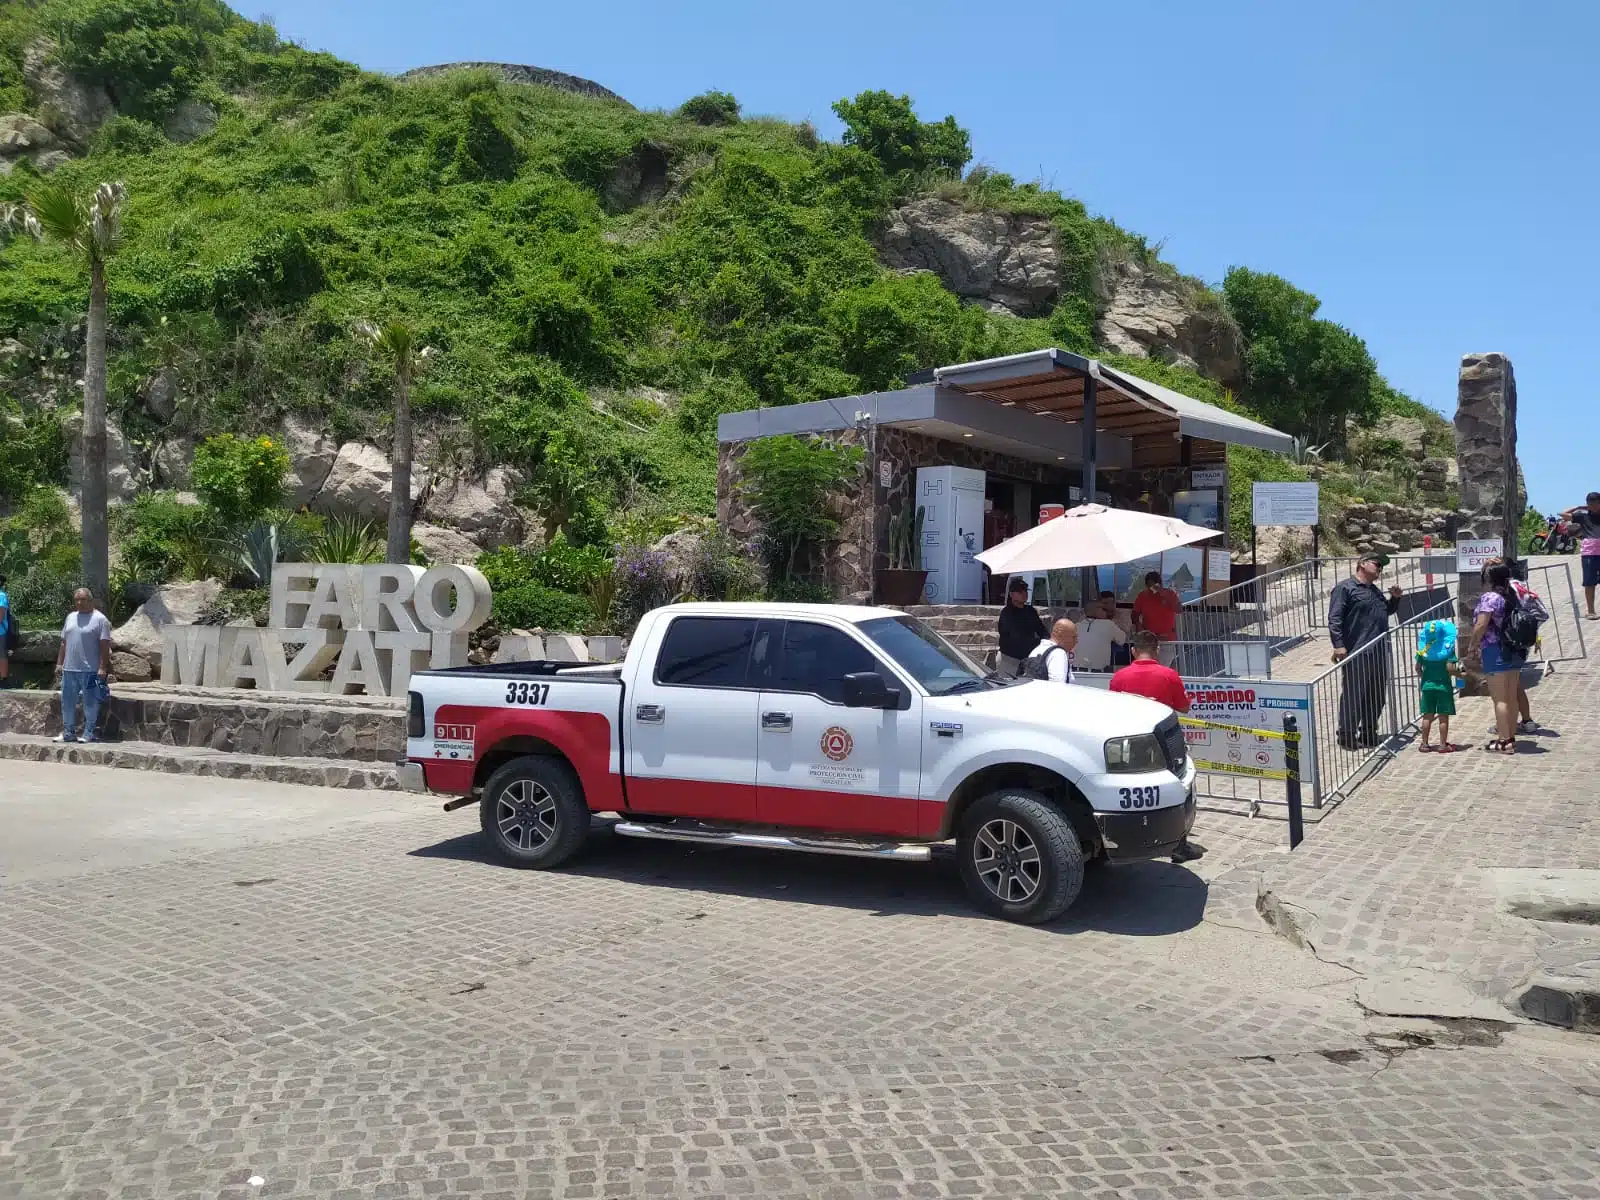 Vehículo de Protección Civil en la entrada del Faro Mazatlán